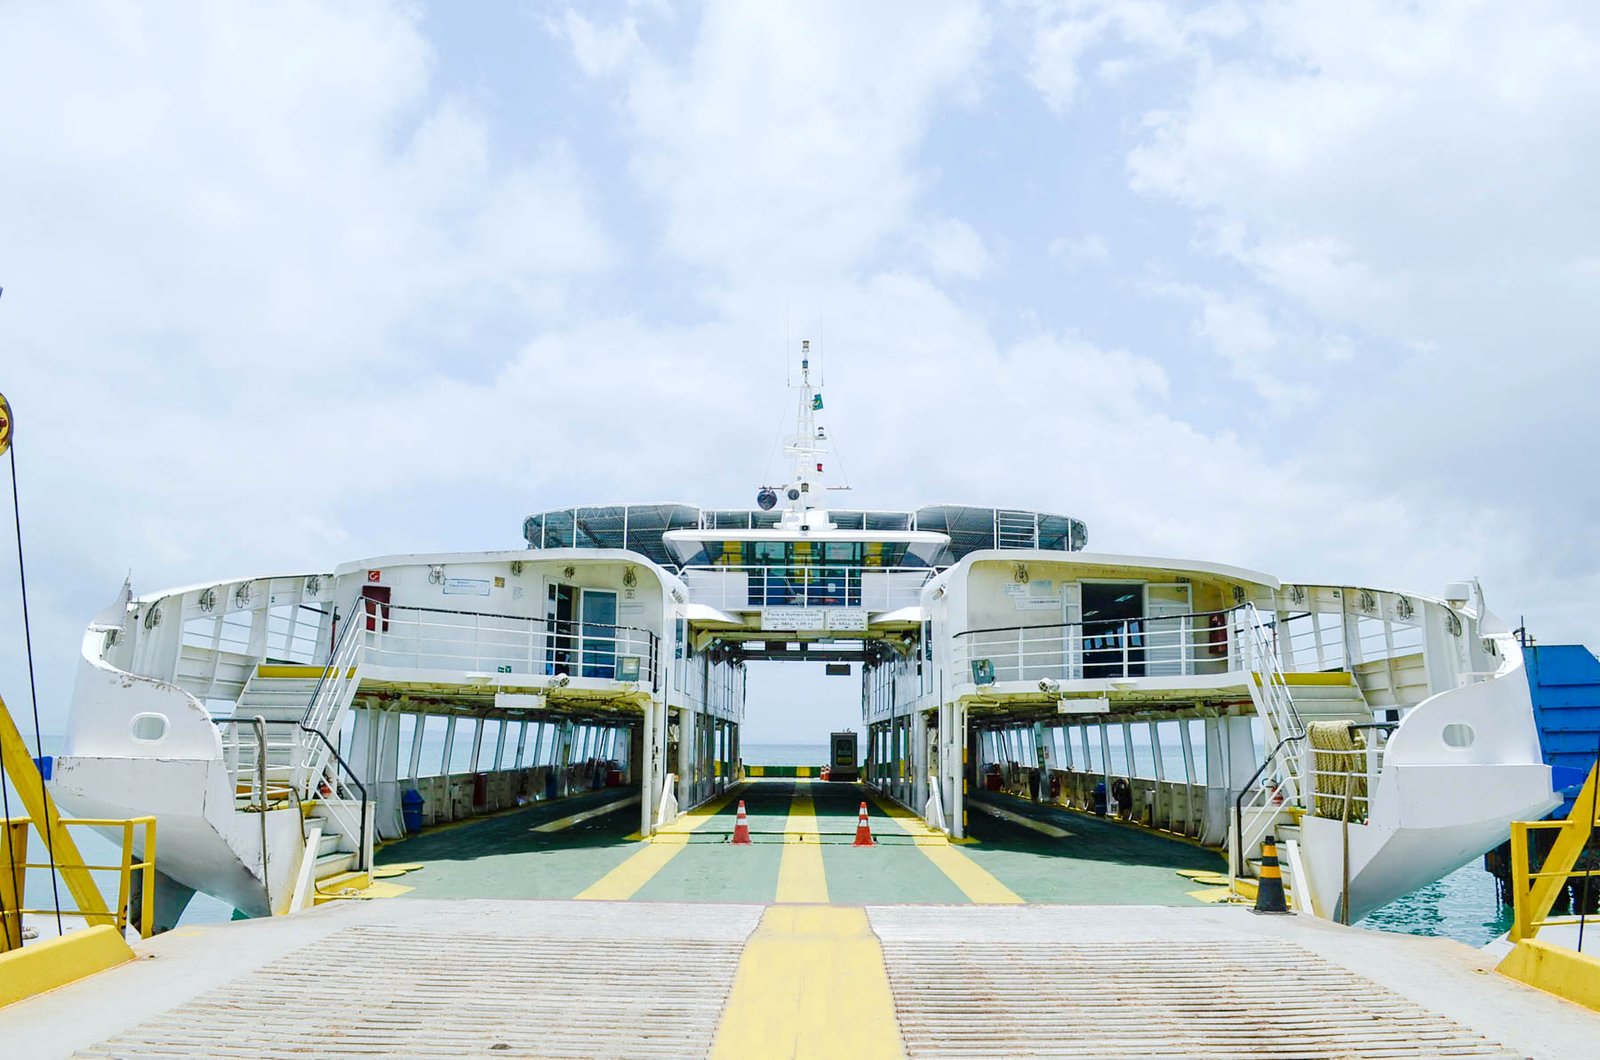 Sistema-Ferry-Boat-conta-com-operacao-especial-para-o-Sao-Joao.jpg